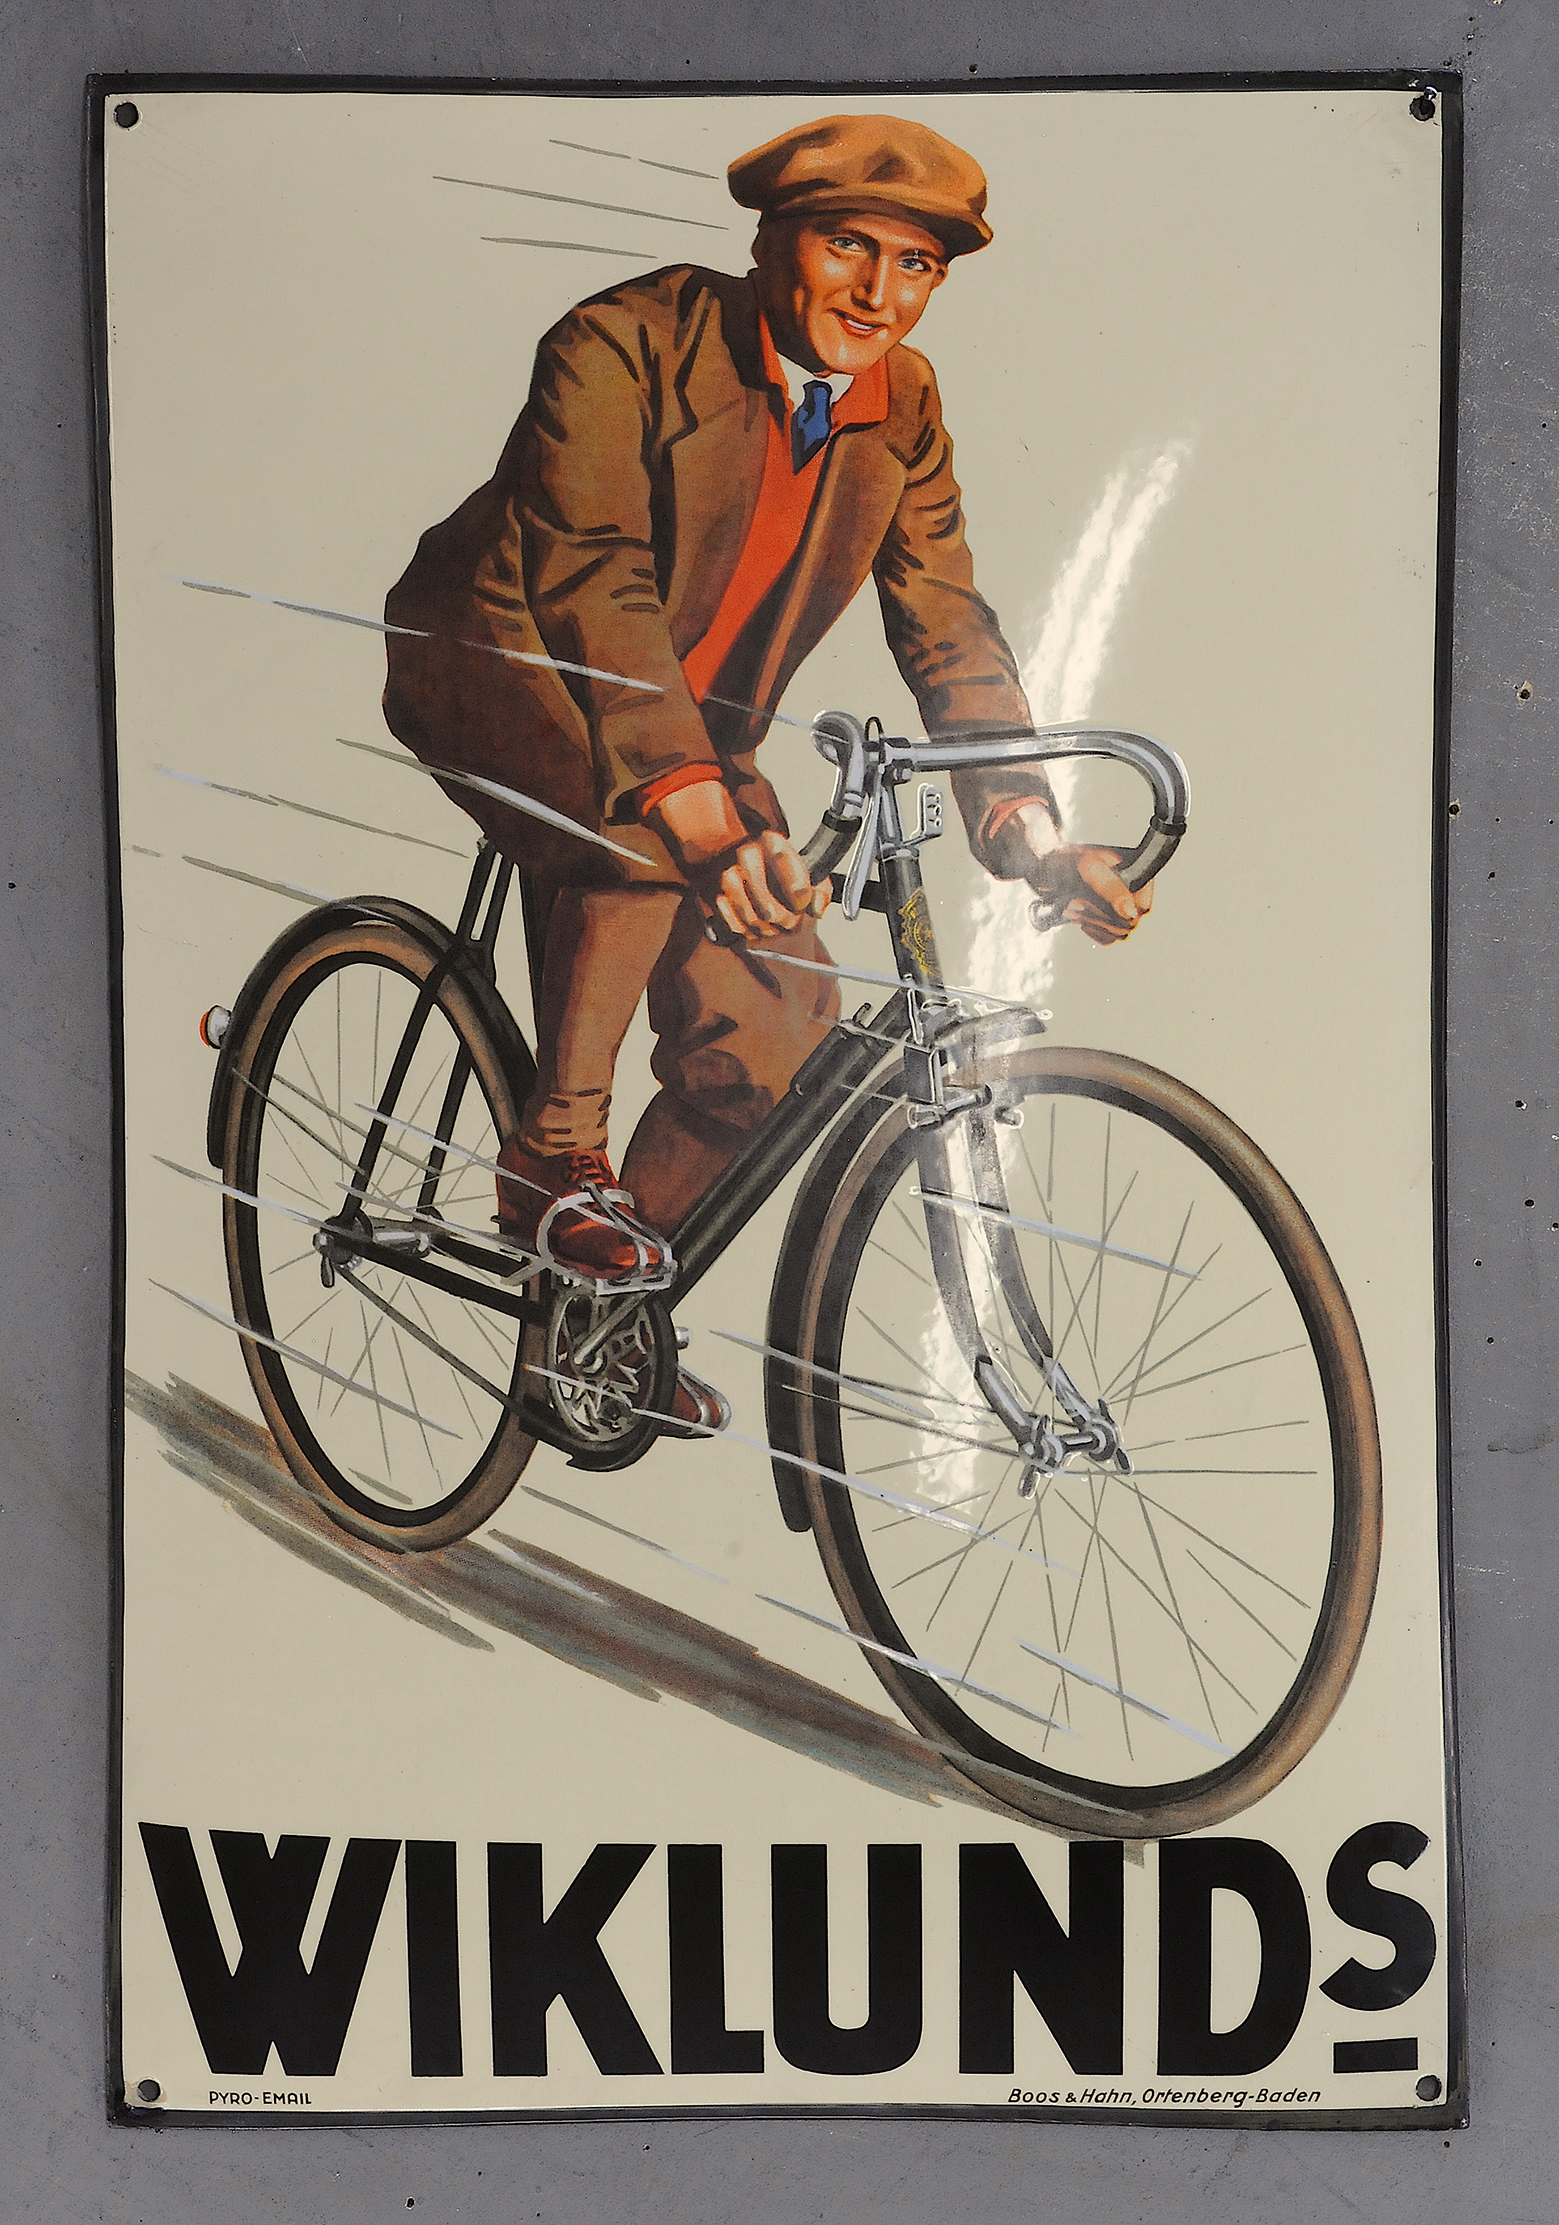 Wiklund's - Image 3 of 3